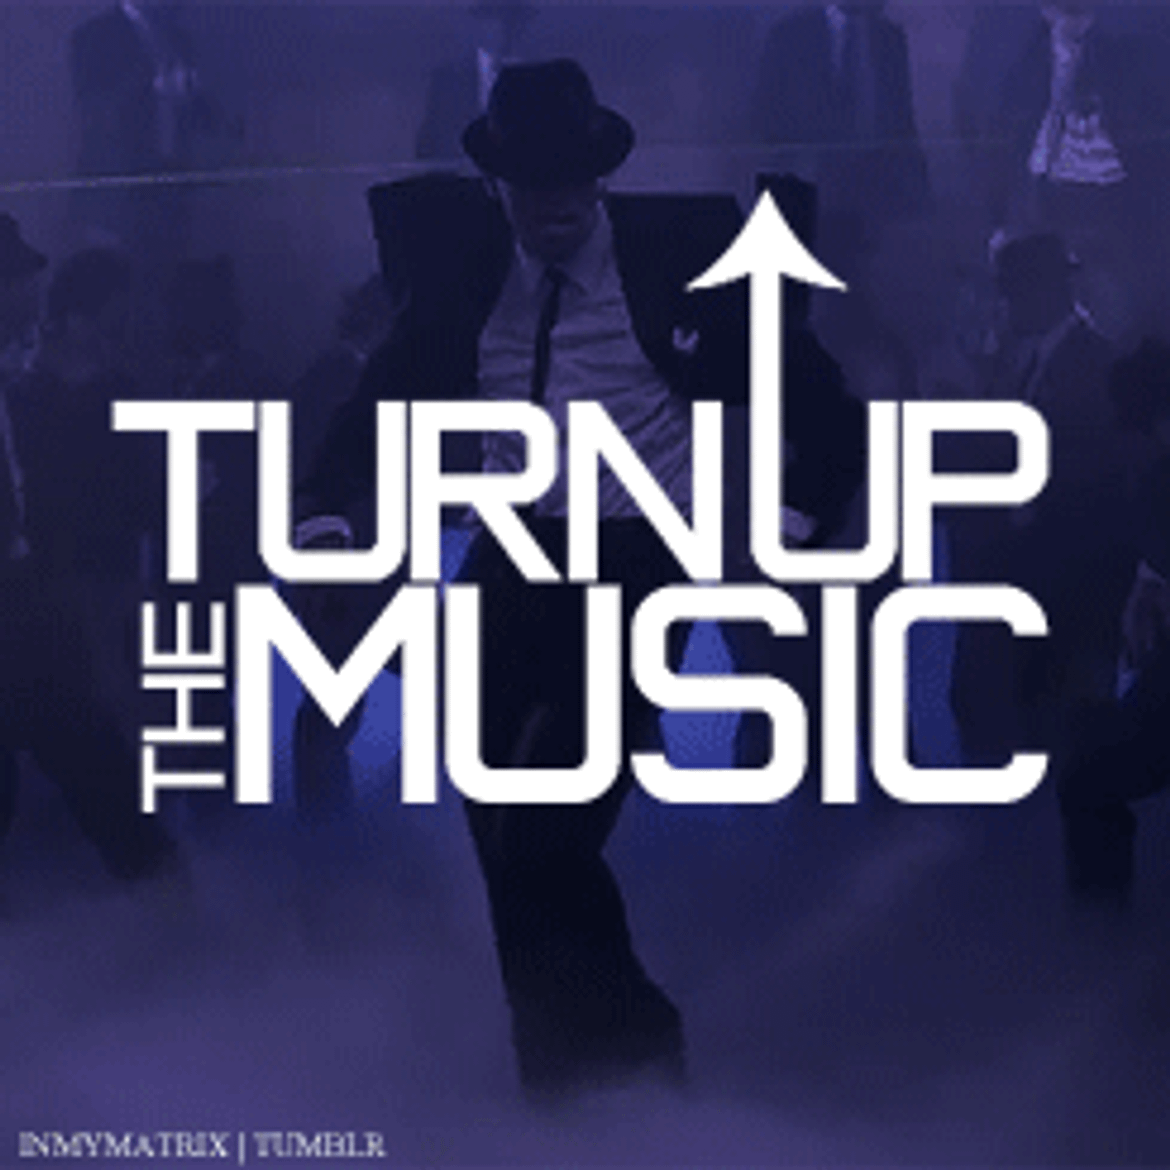 Turn up. Turn up the Music. Turn on the Music. Вектор turn the Music. Can you turn the music